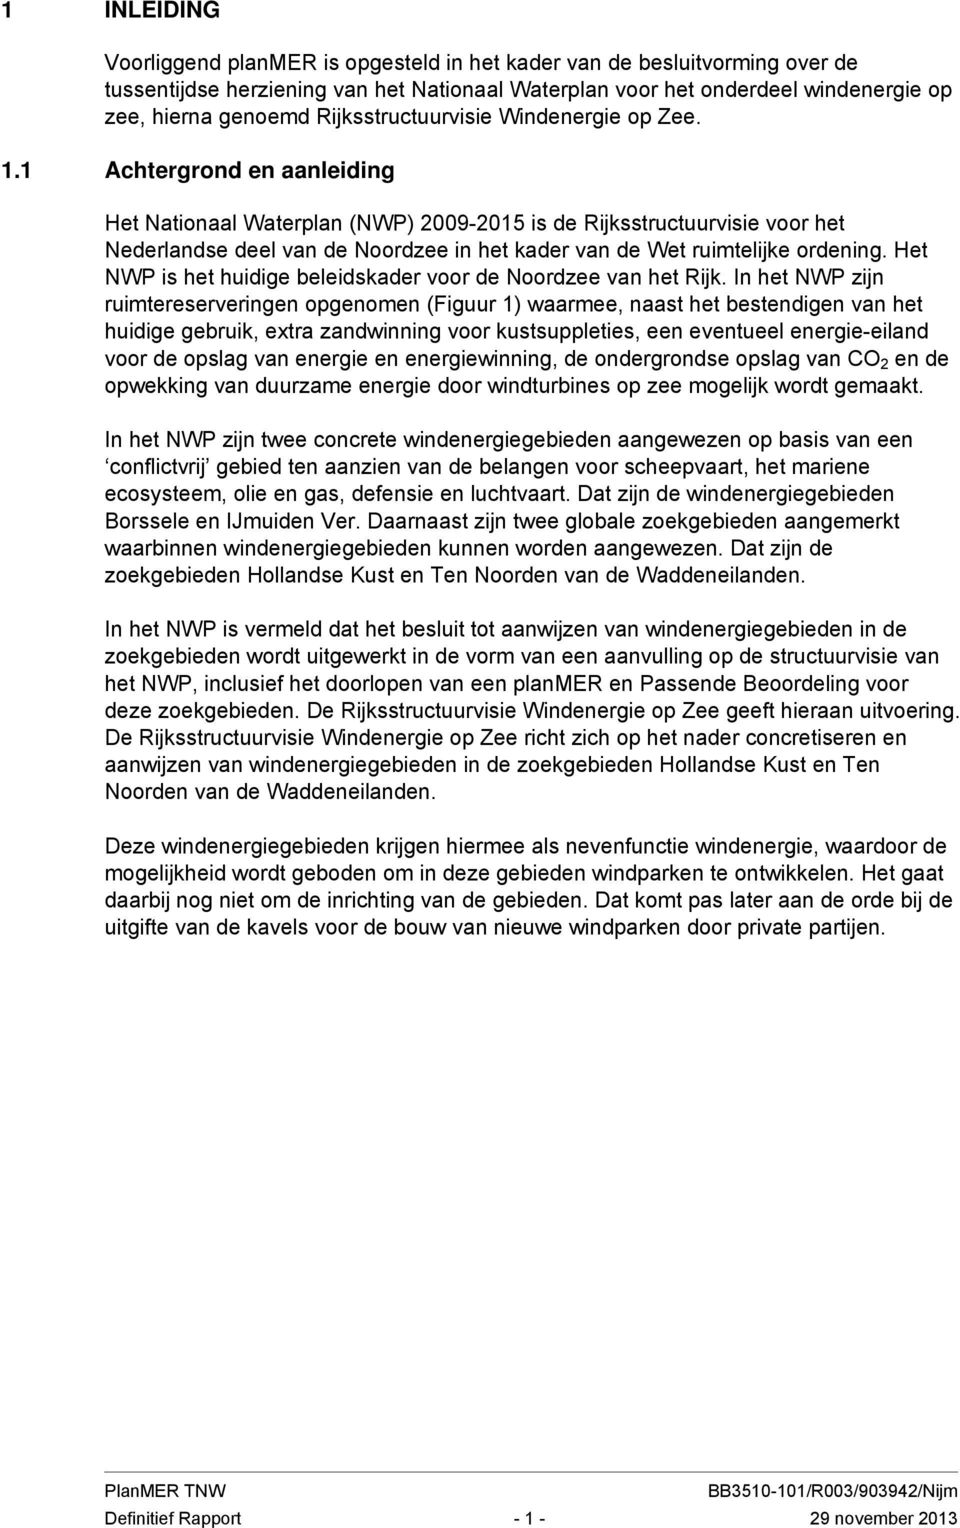 1 Achtergrond en aanleiding Het Nationaal Waterplan (NWP) 2009-2015 is de Rijksstructuurvisie voor het Nederlandse deel van de Noordzee in het kader van de Wet ruimtelijke ordening.